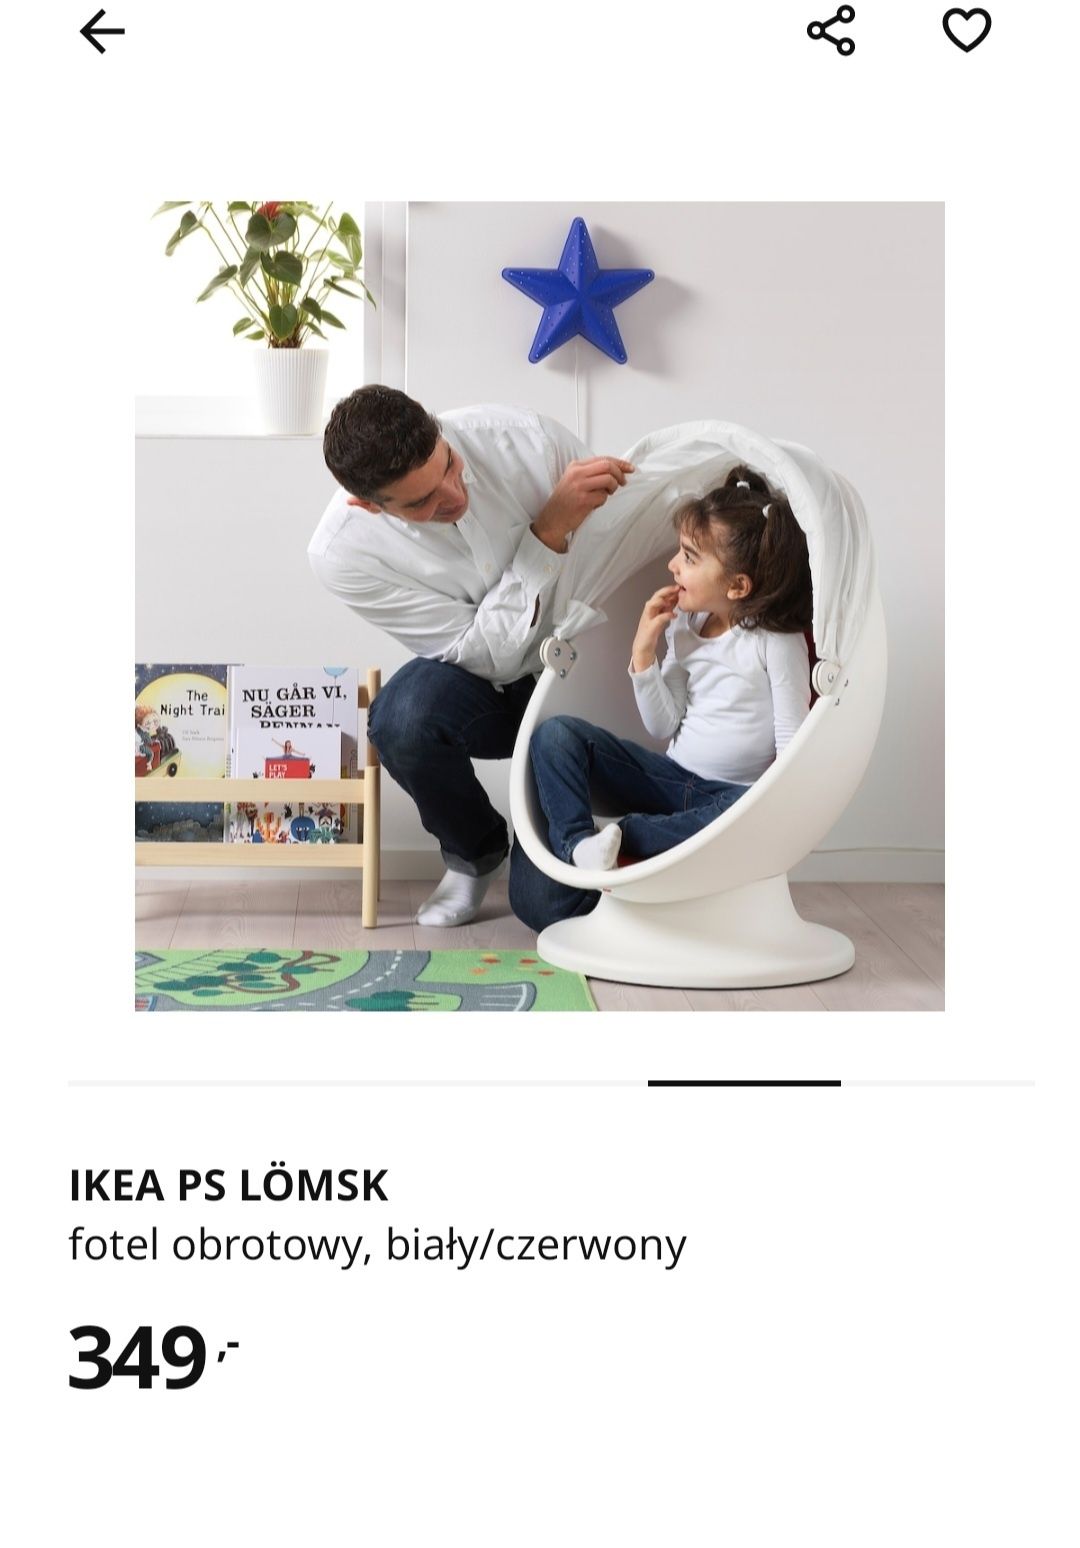 Fotel obrotowy IKEA